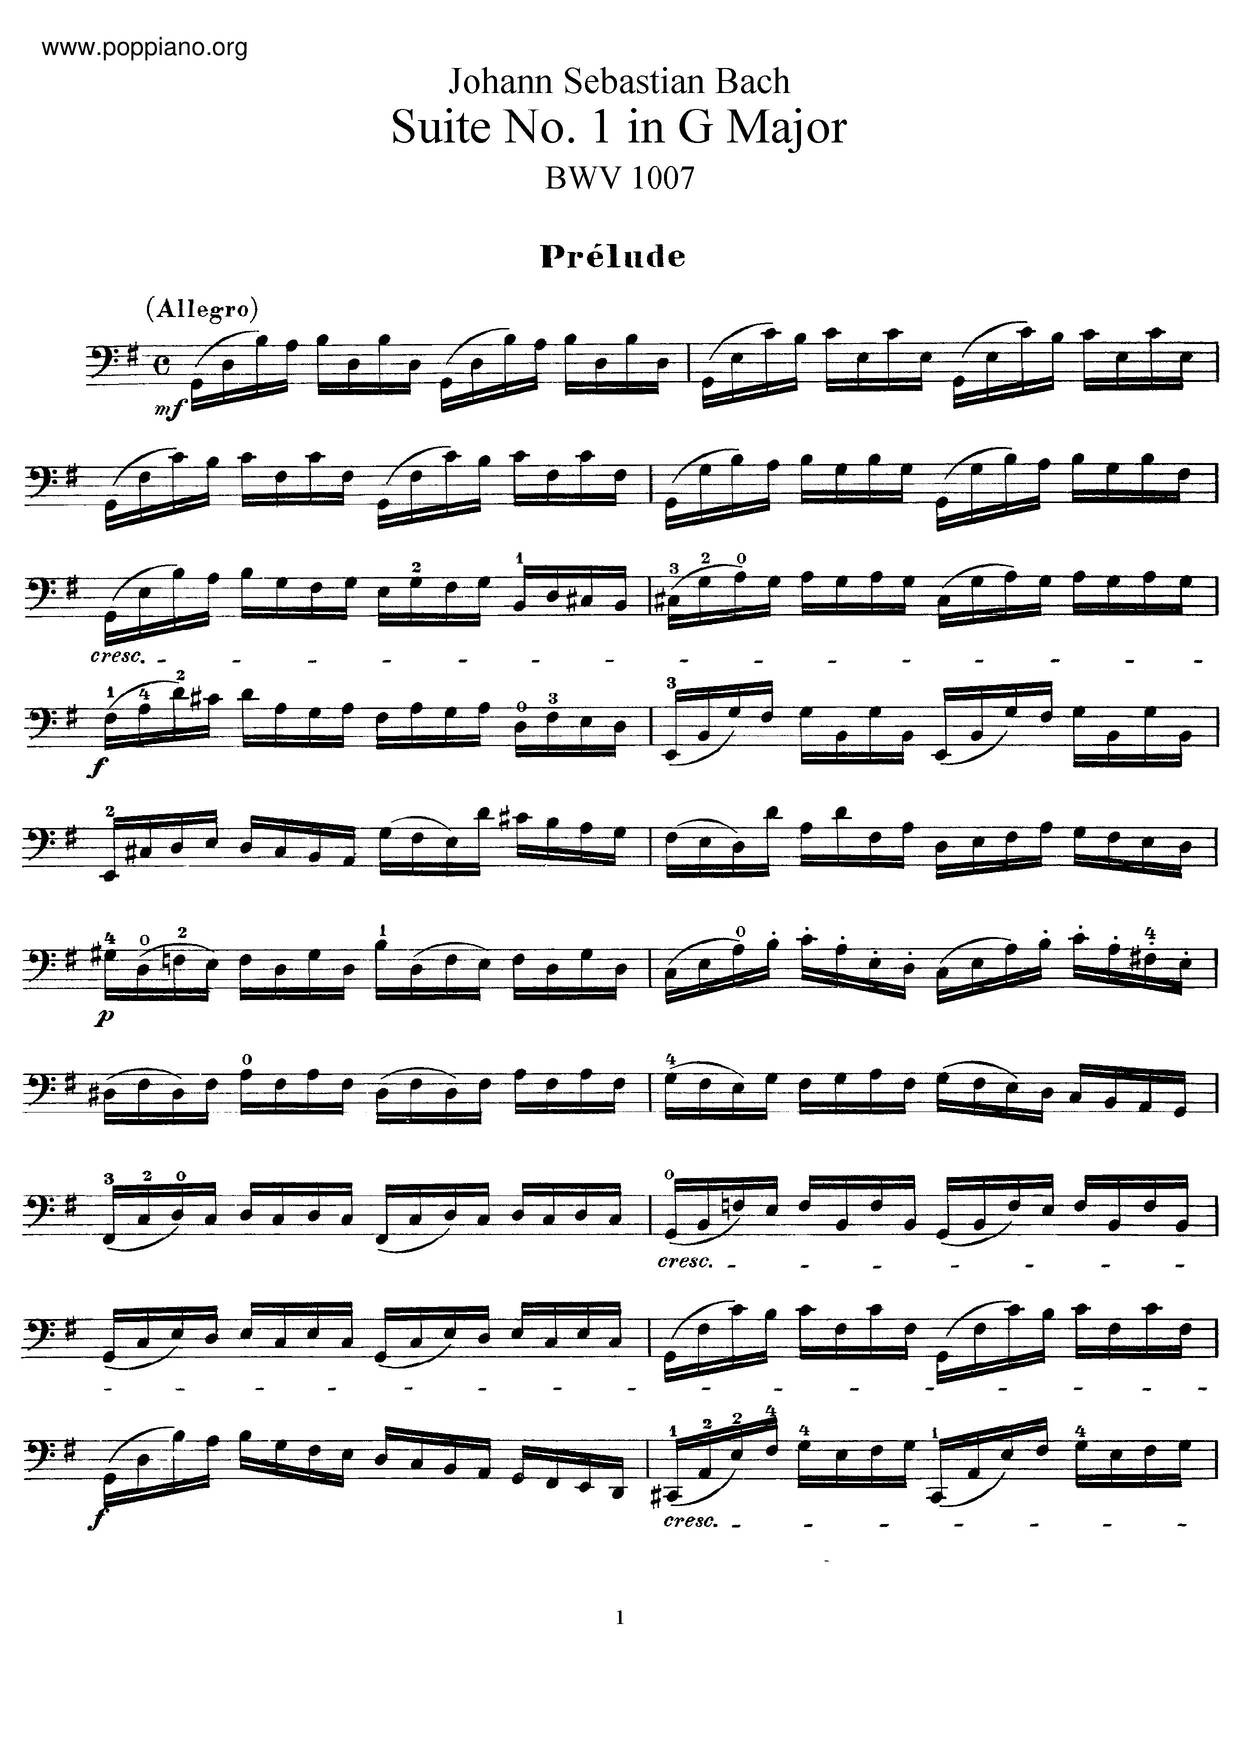 Unaccompanied Cello Suite No. 1 in G major, BWV 1007: I. Prélude琴譜